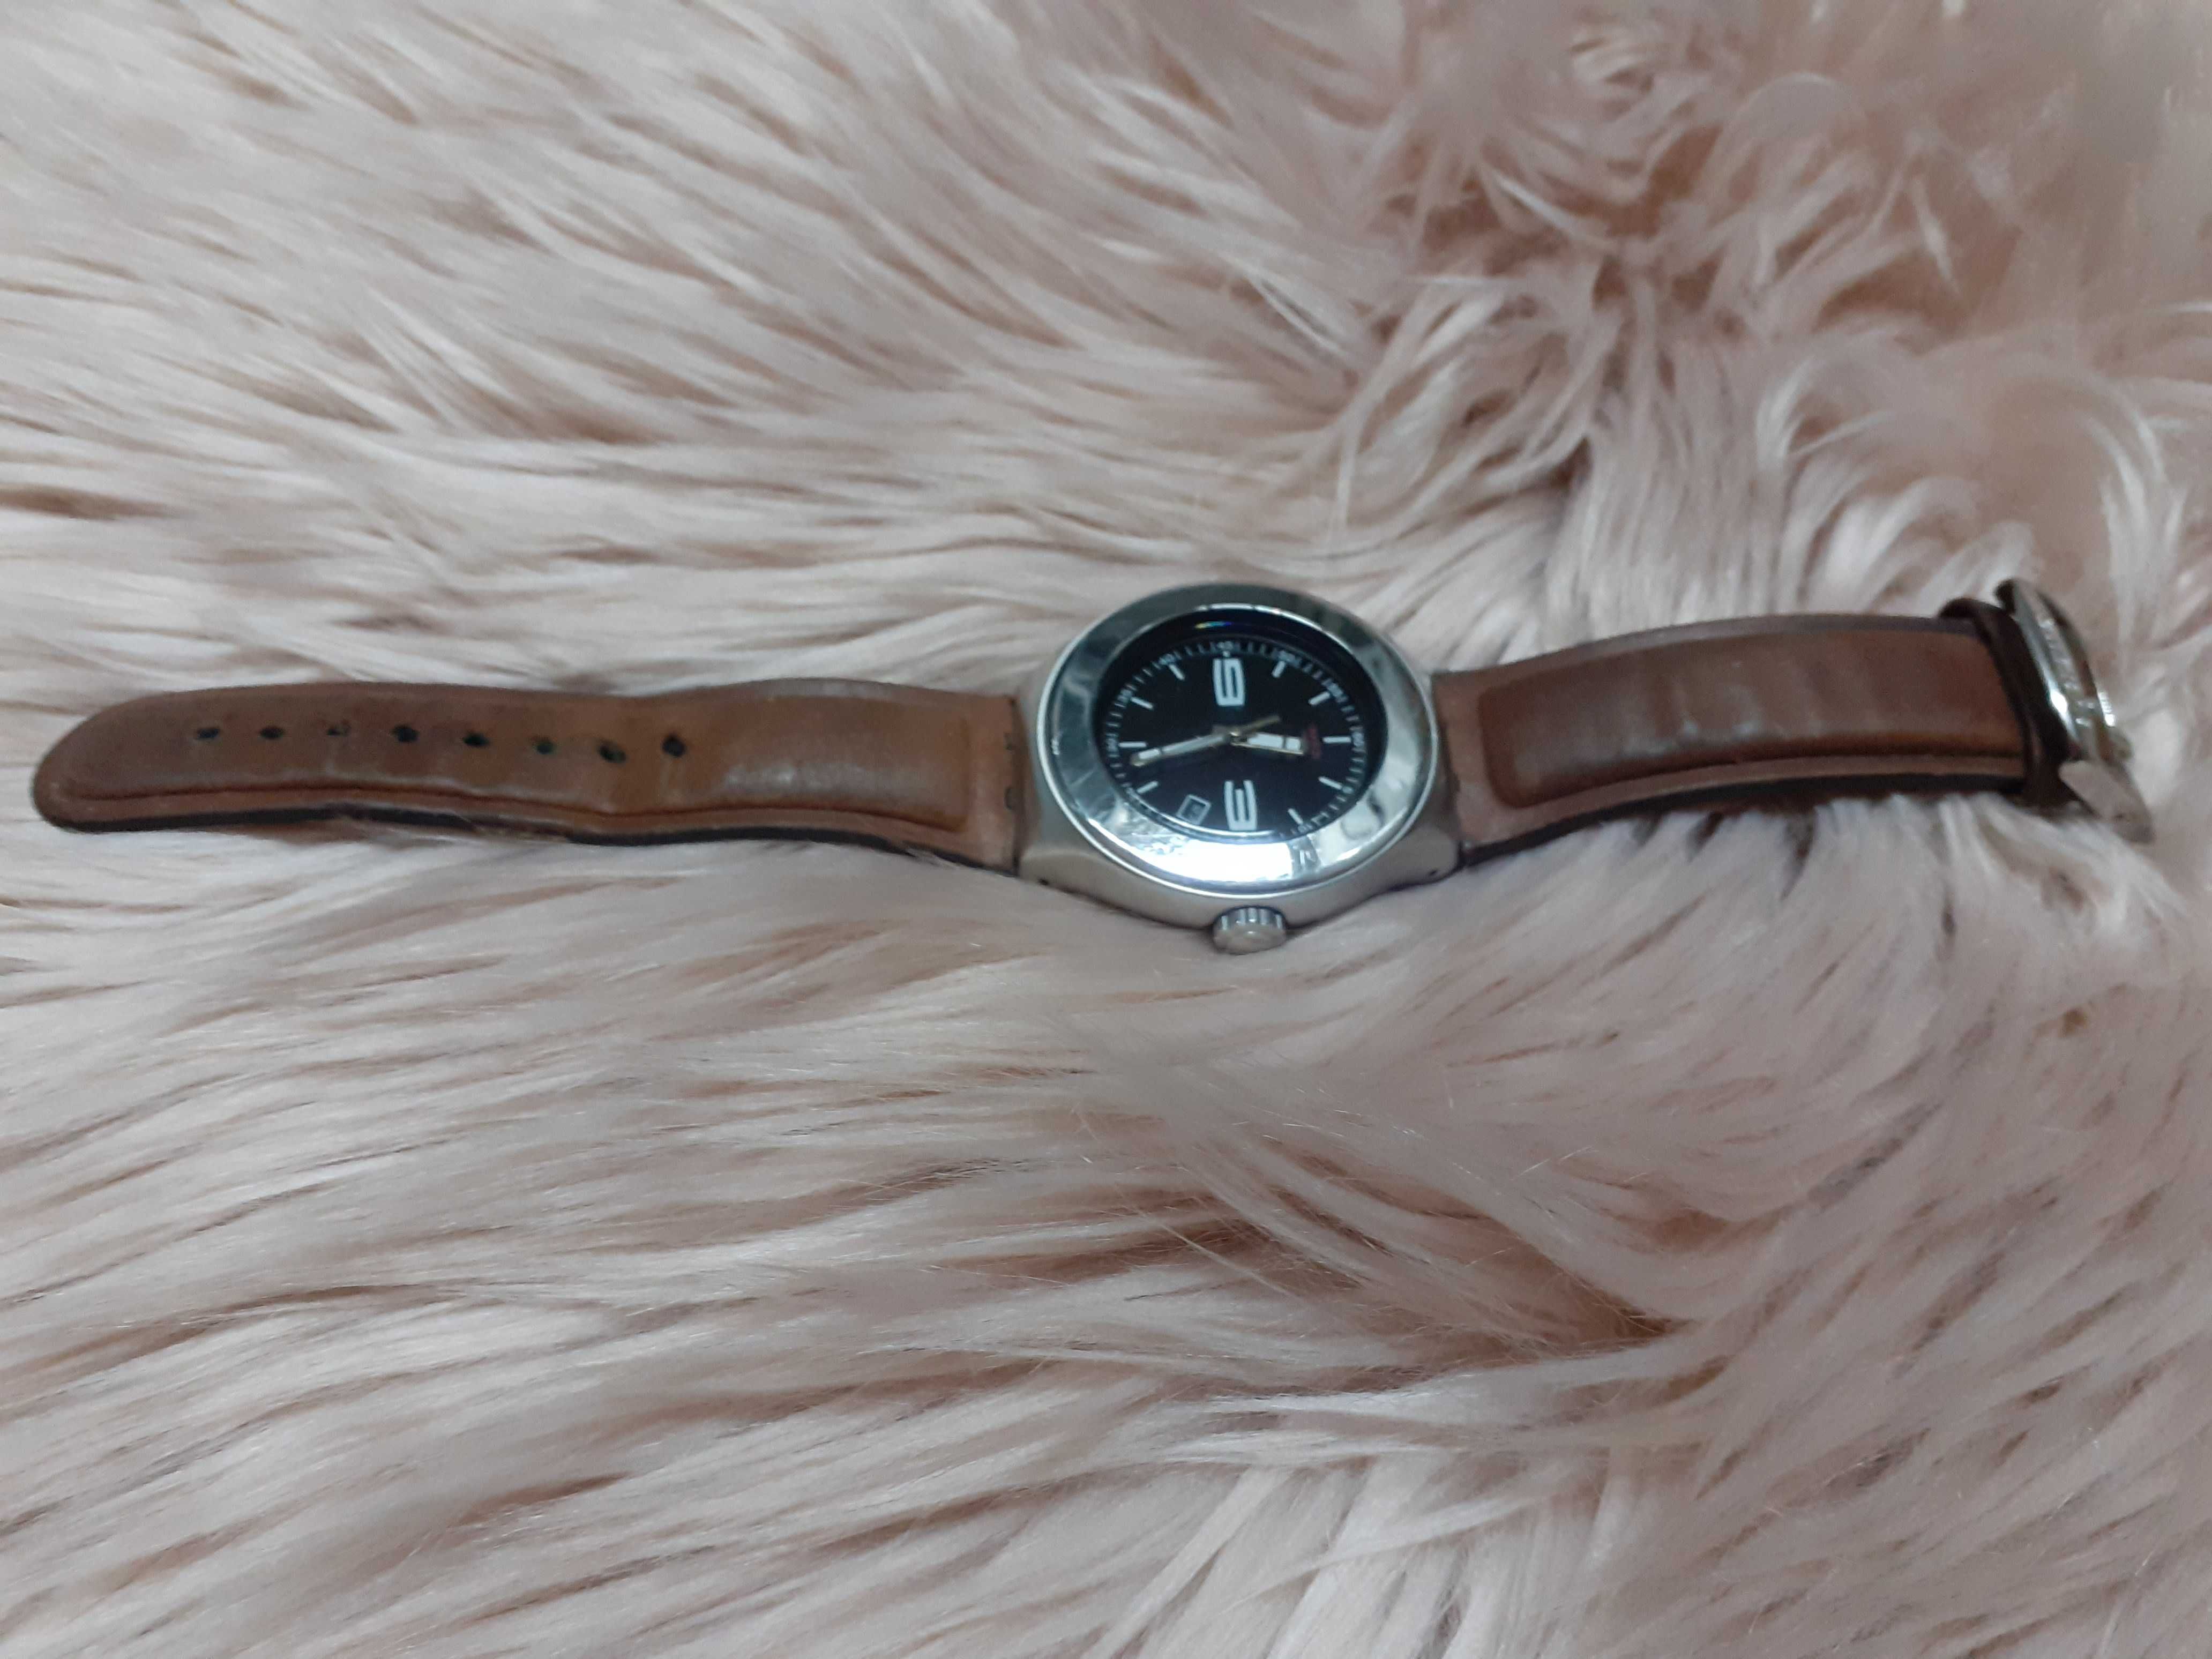 Relógio da marca Swatch